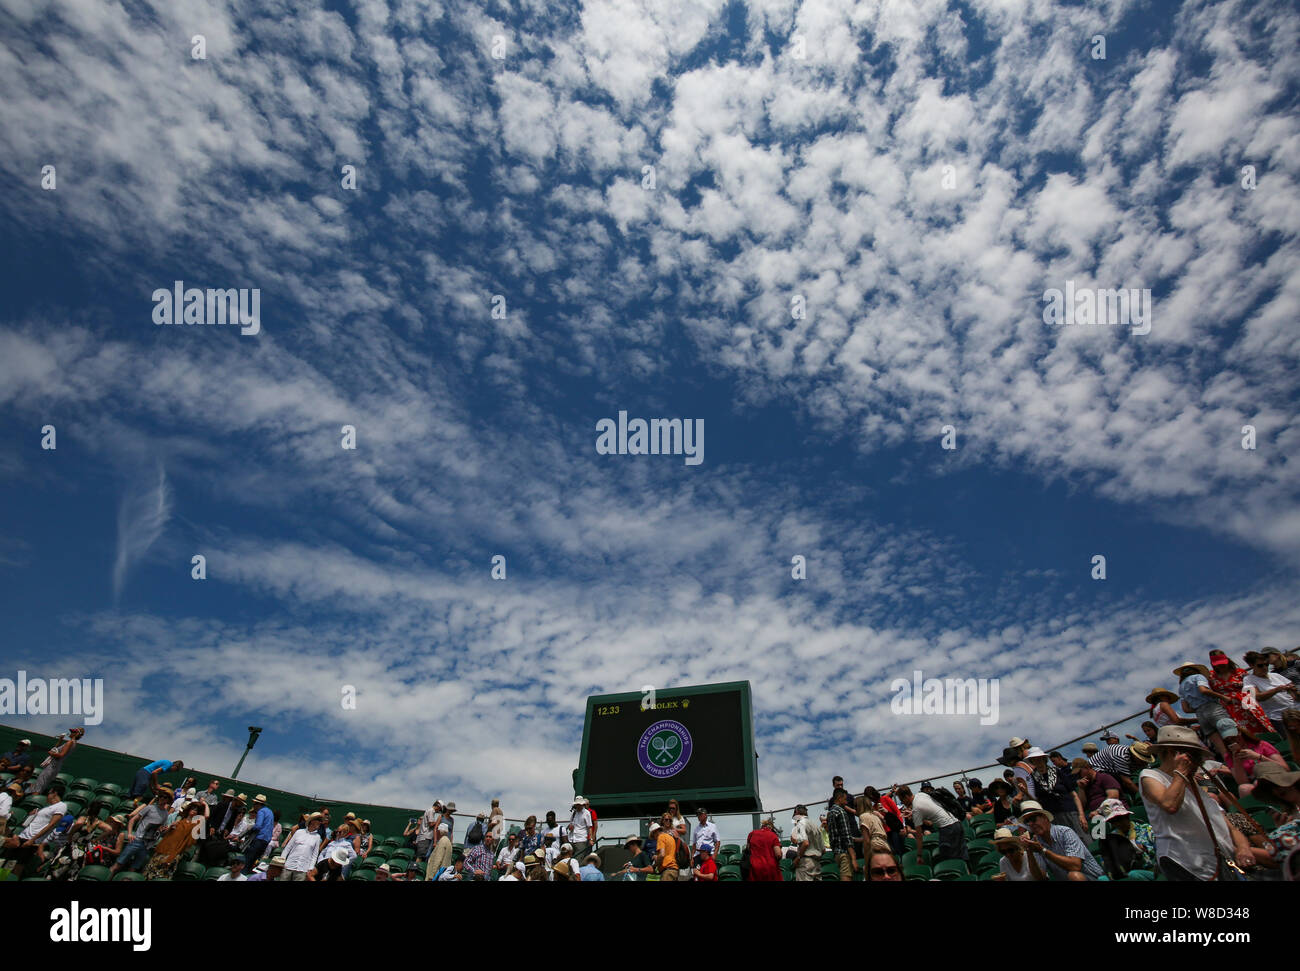 Low angle view of ciel nuageux au-dessus du stade de tennis de Wimbledon, au cours de 2019 Londres, Angleterre, Royaume-Uni Banque D'Images